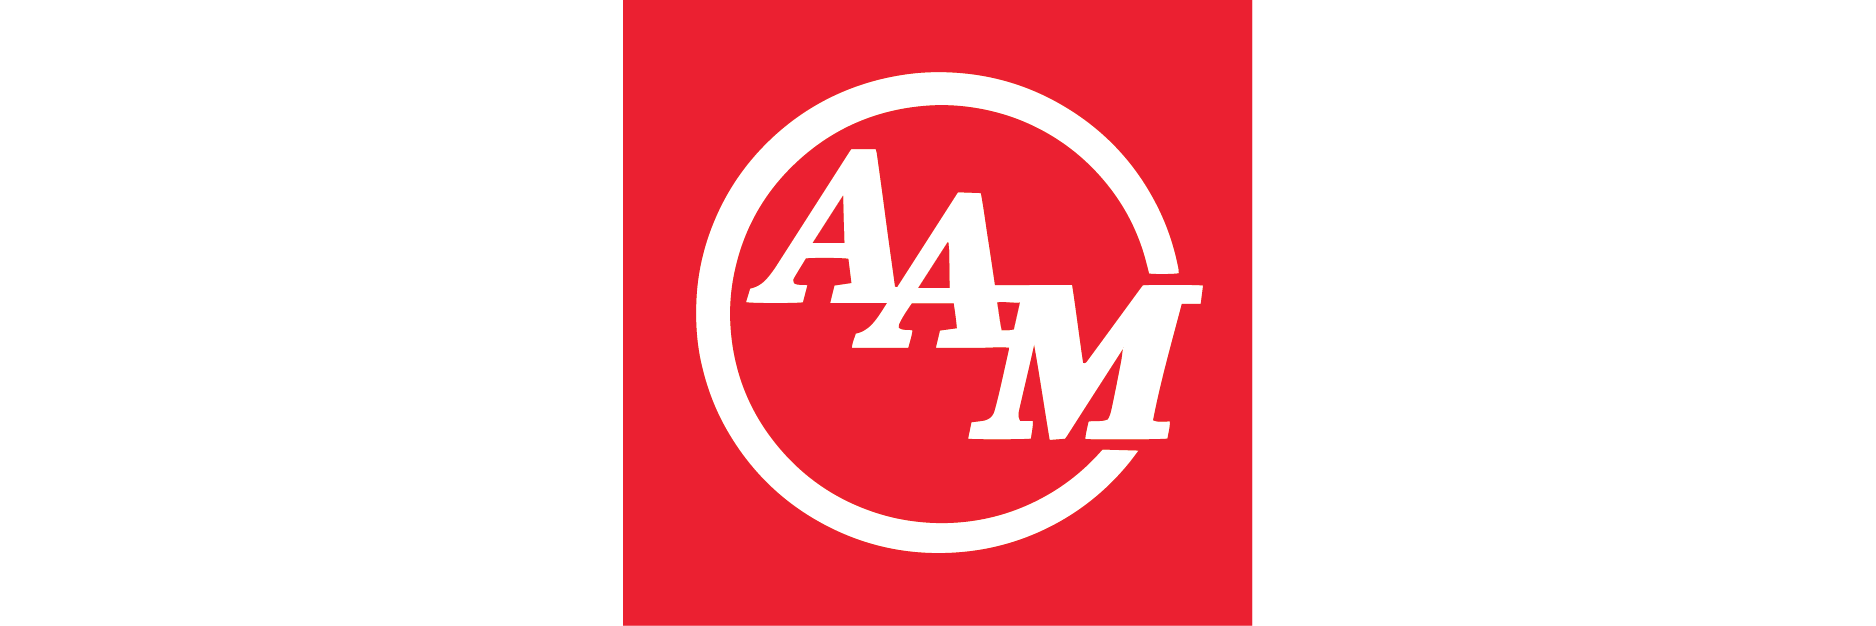 Aam Logo - AAM Powertrain Webstore - Home